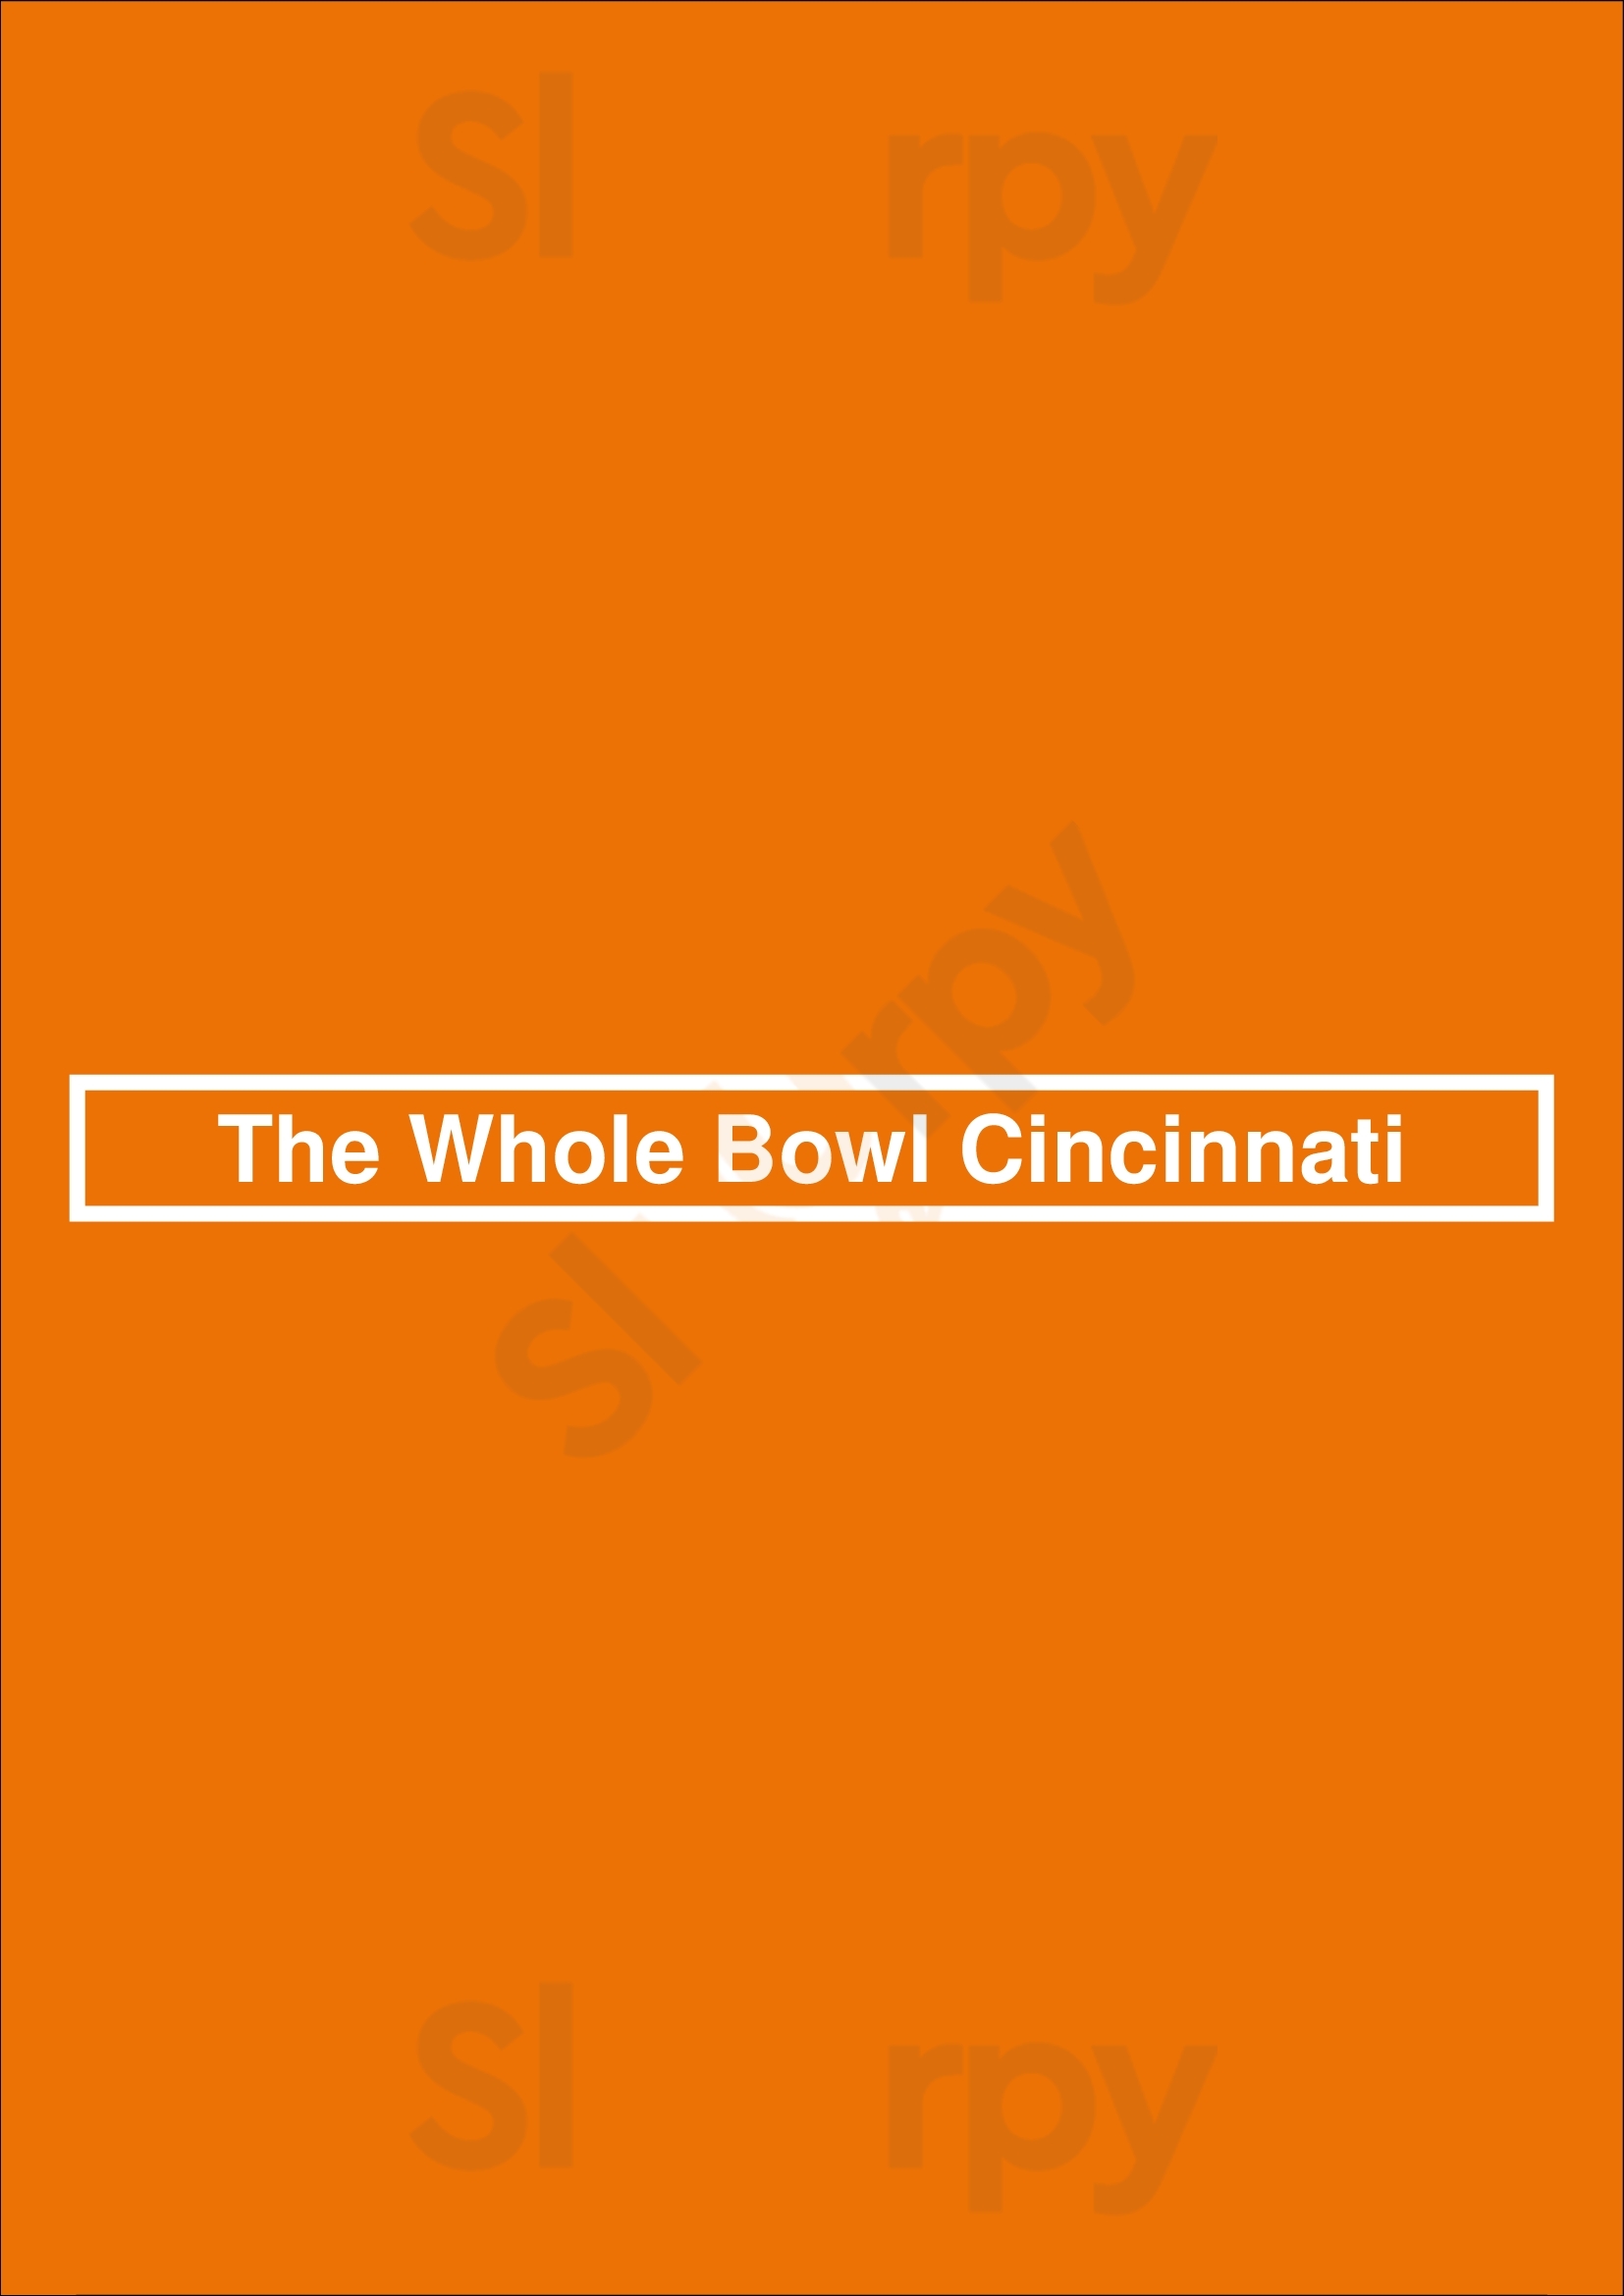 The Whole Bowl Cincinnati Cincinnati Menu - 1